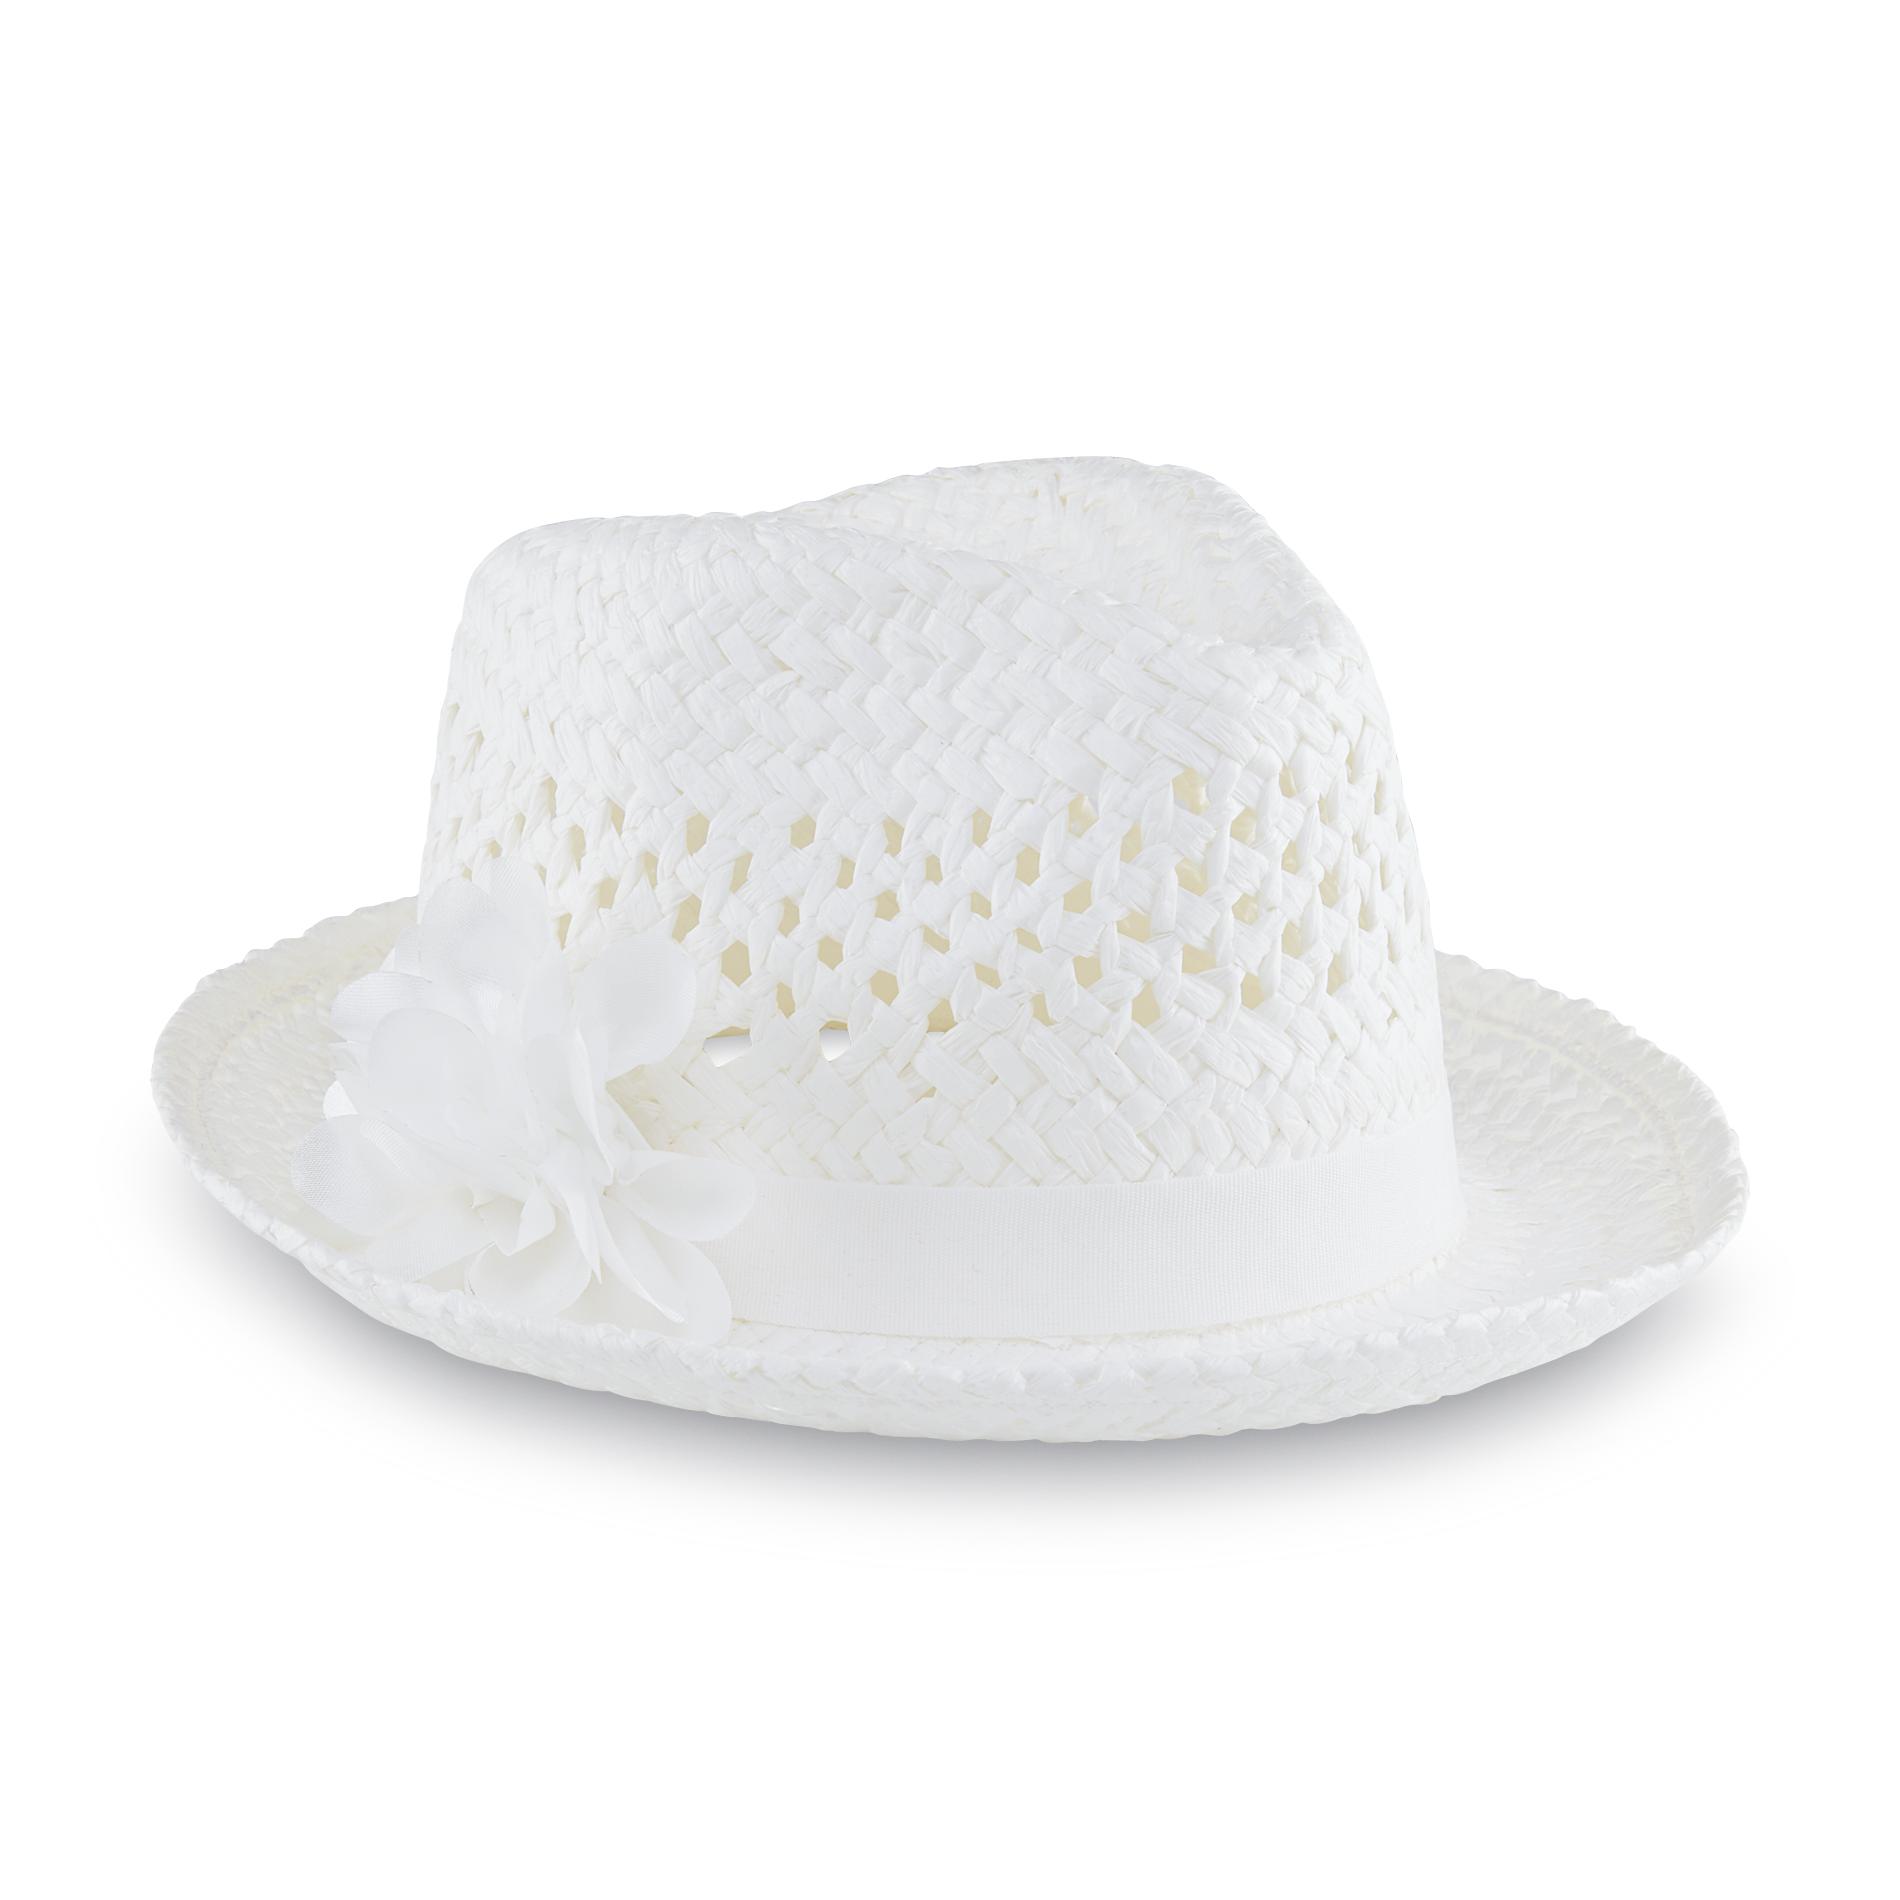 Joe Boxer Women's Open-Weave Straw Fedora Hat